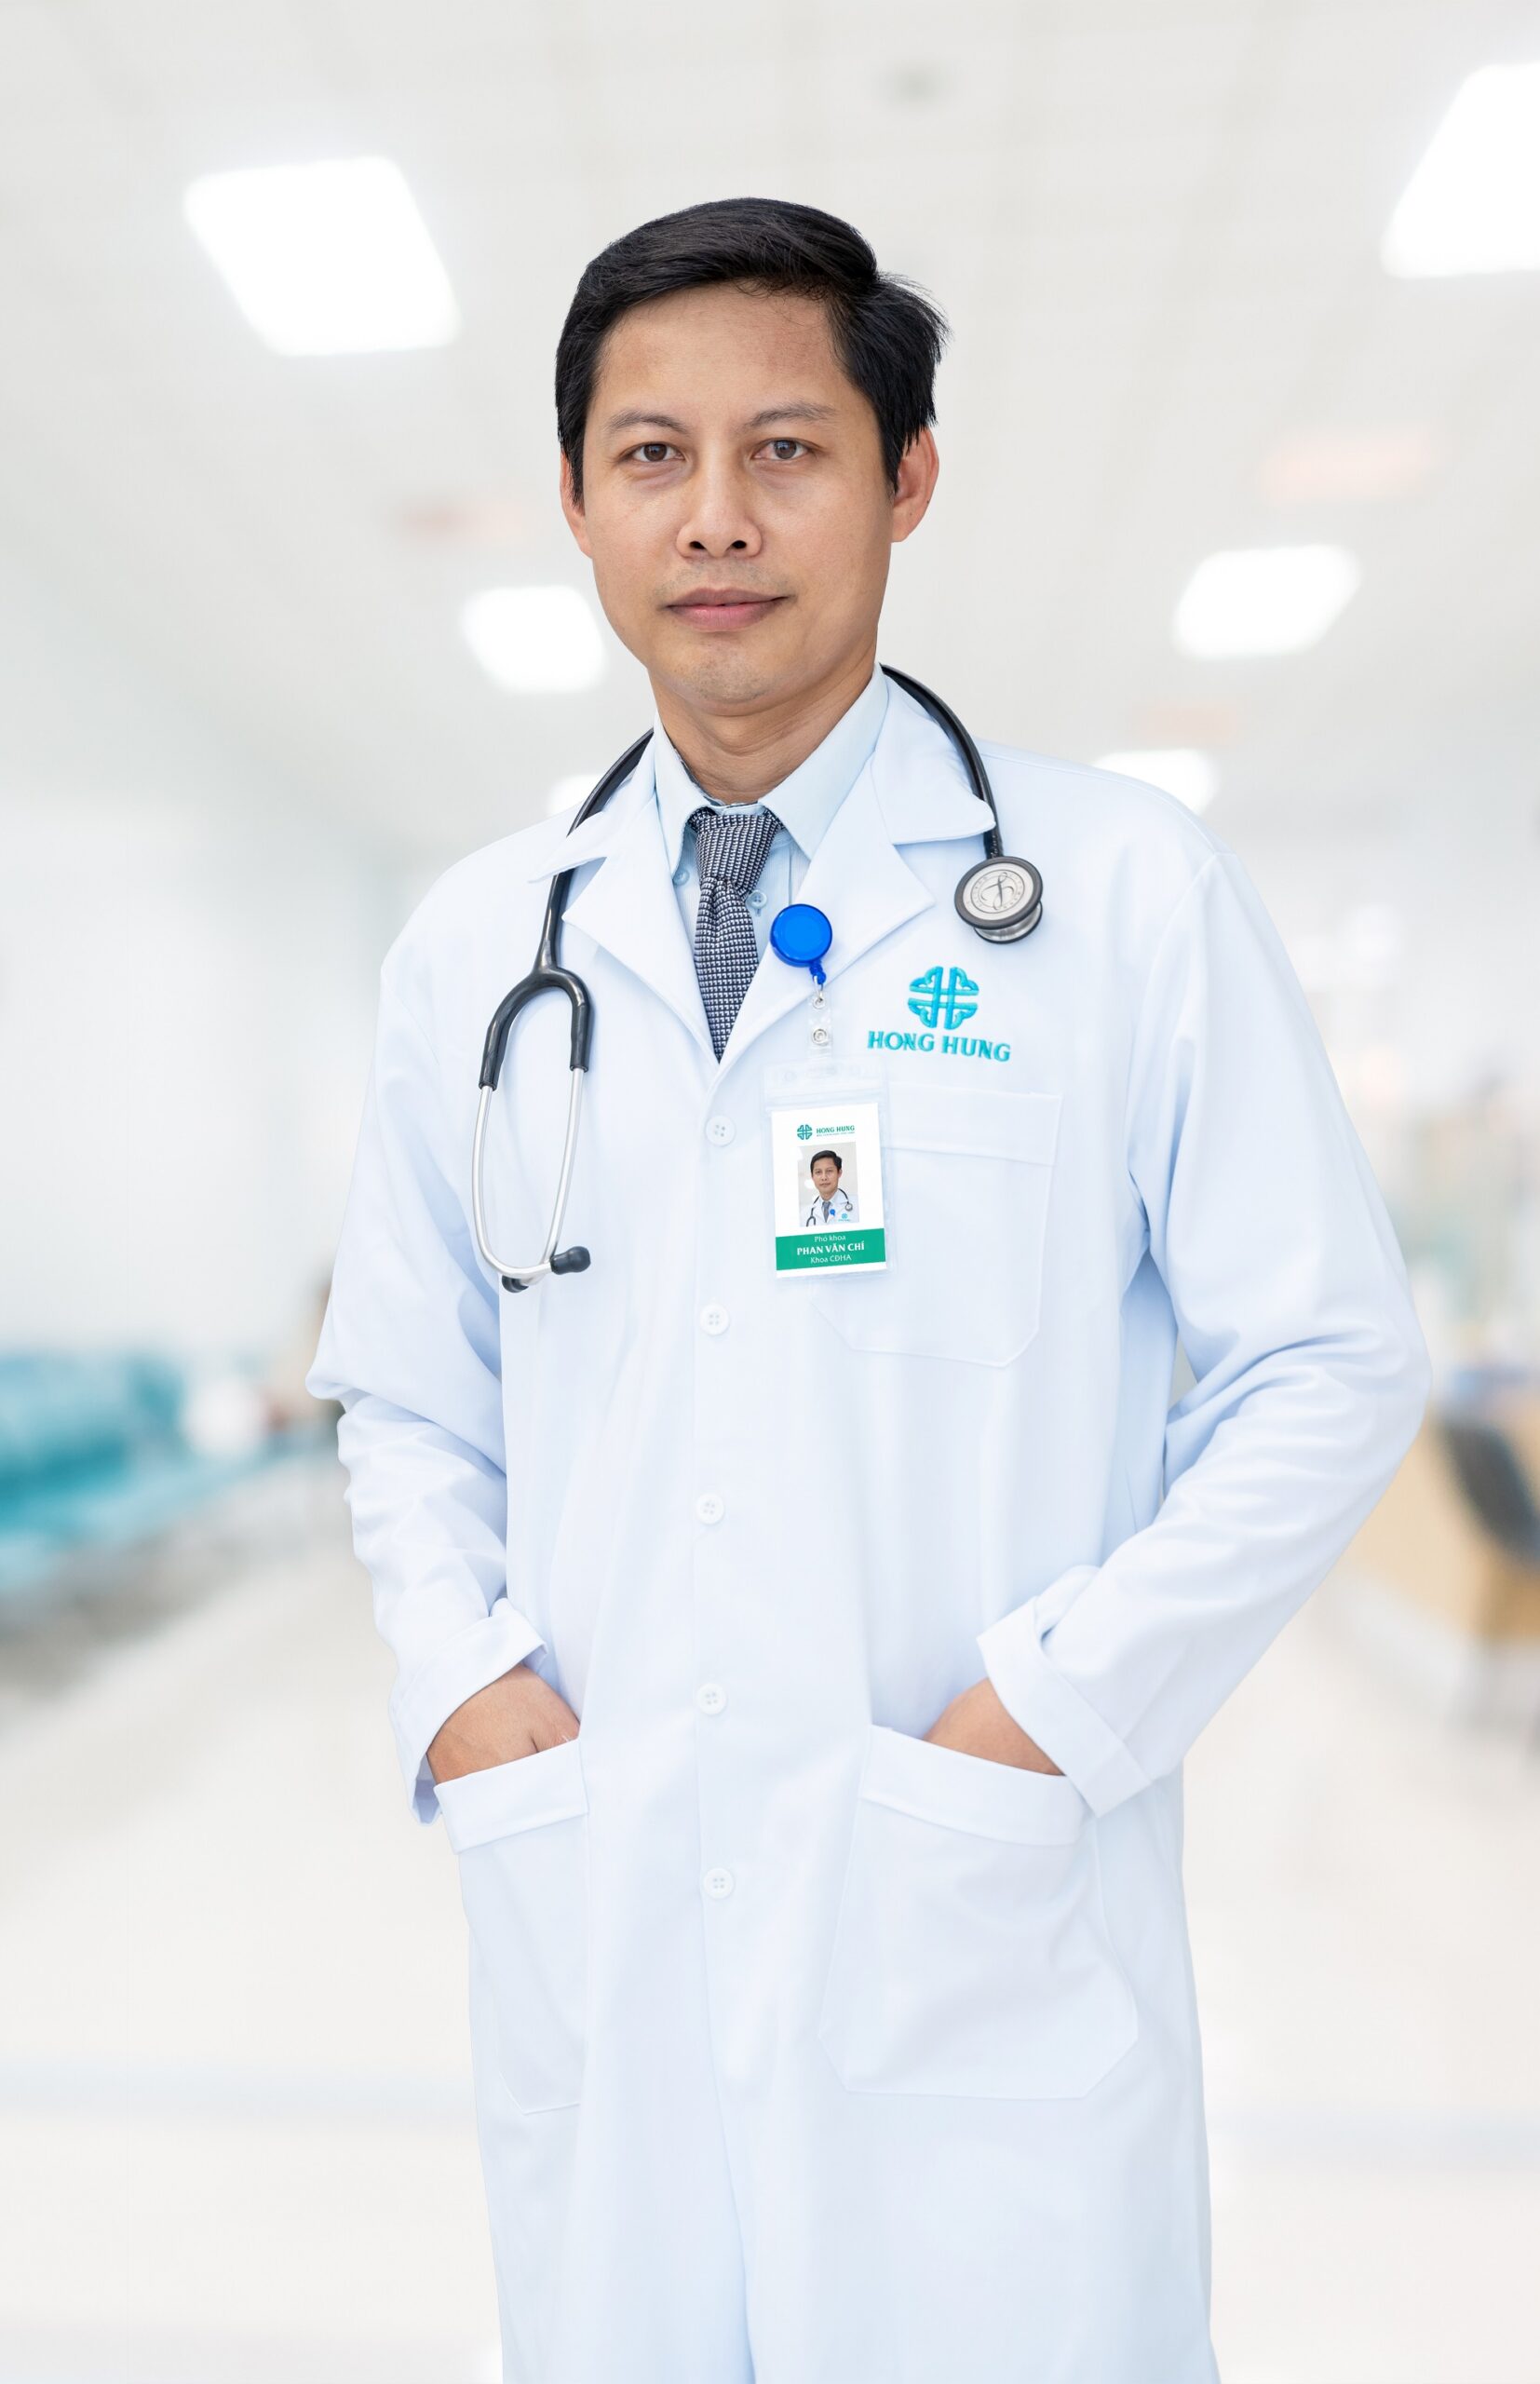 Bs Cki. Phan Văn Chí – Khoa Chẩn Đoán Hình Ảnh - Hong Hung Hospital